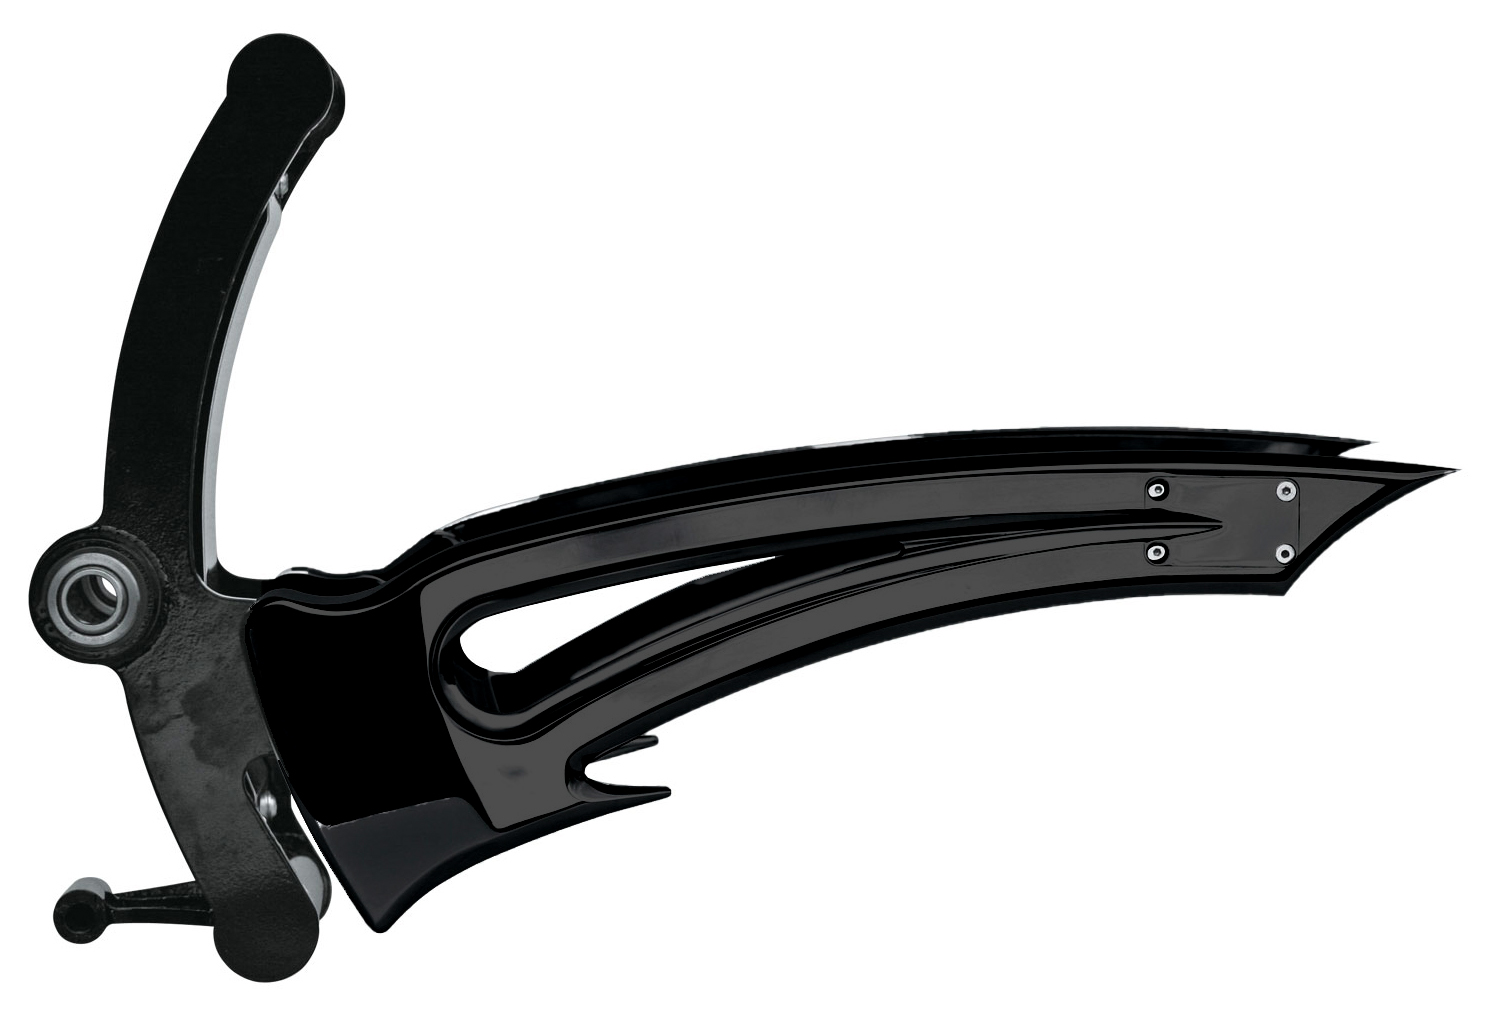 swingarm cobra for 240 / 260 tire for 2008-17 harley rocker’s, breakout’s and cvo springer’s – black